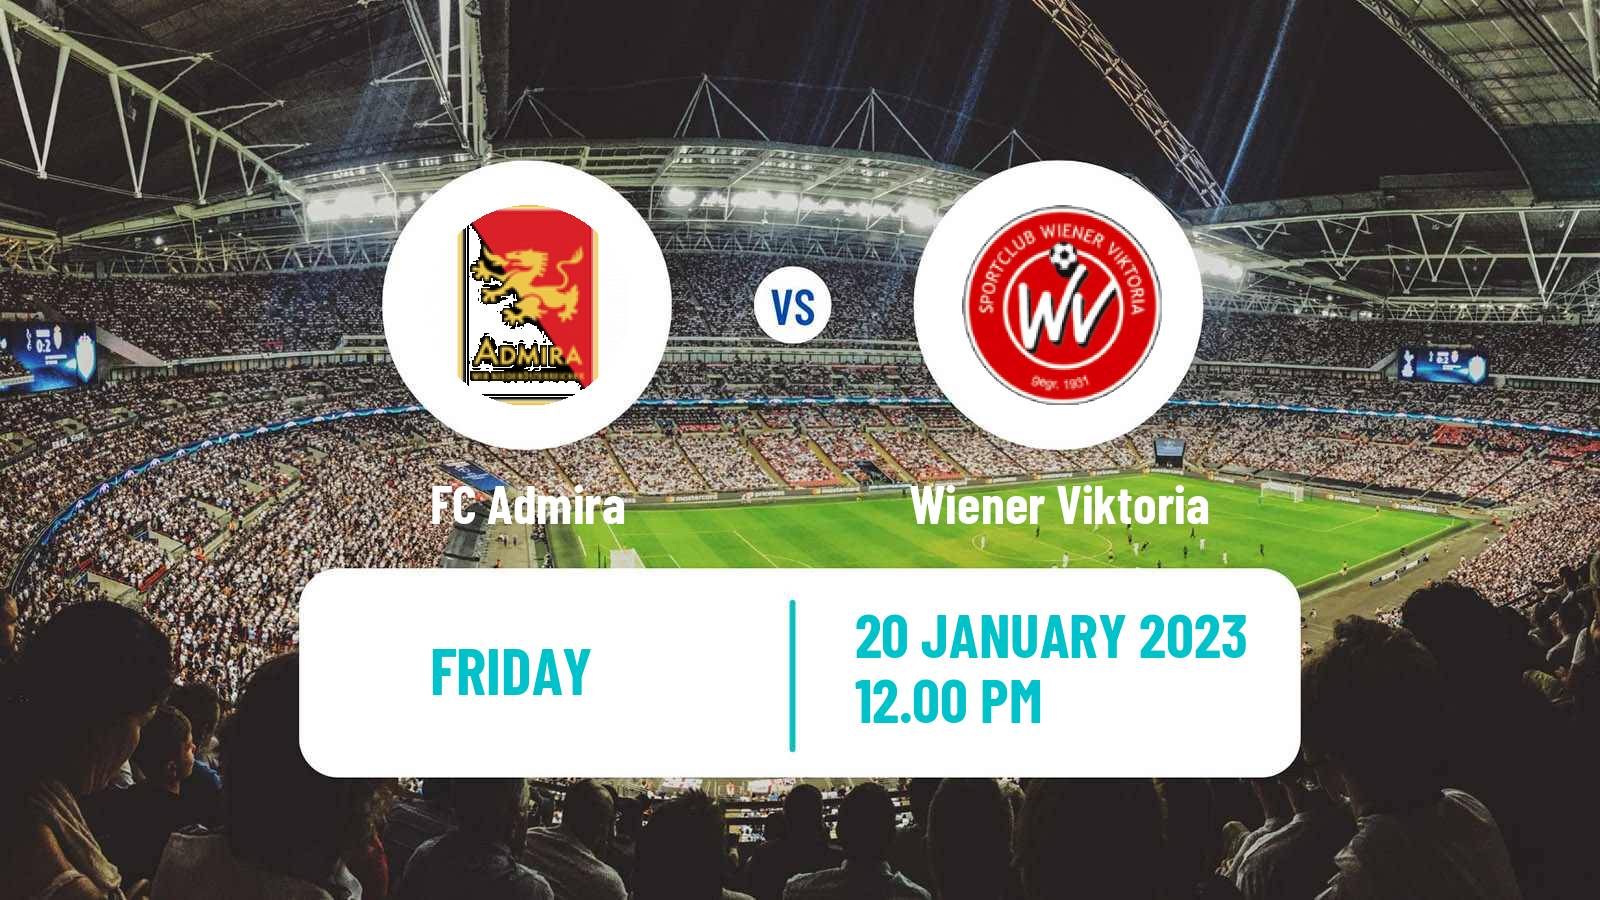 Soccer Club Friendly Admira - Wiener Viktoria